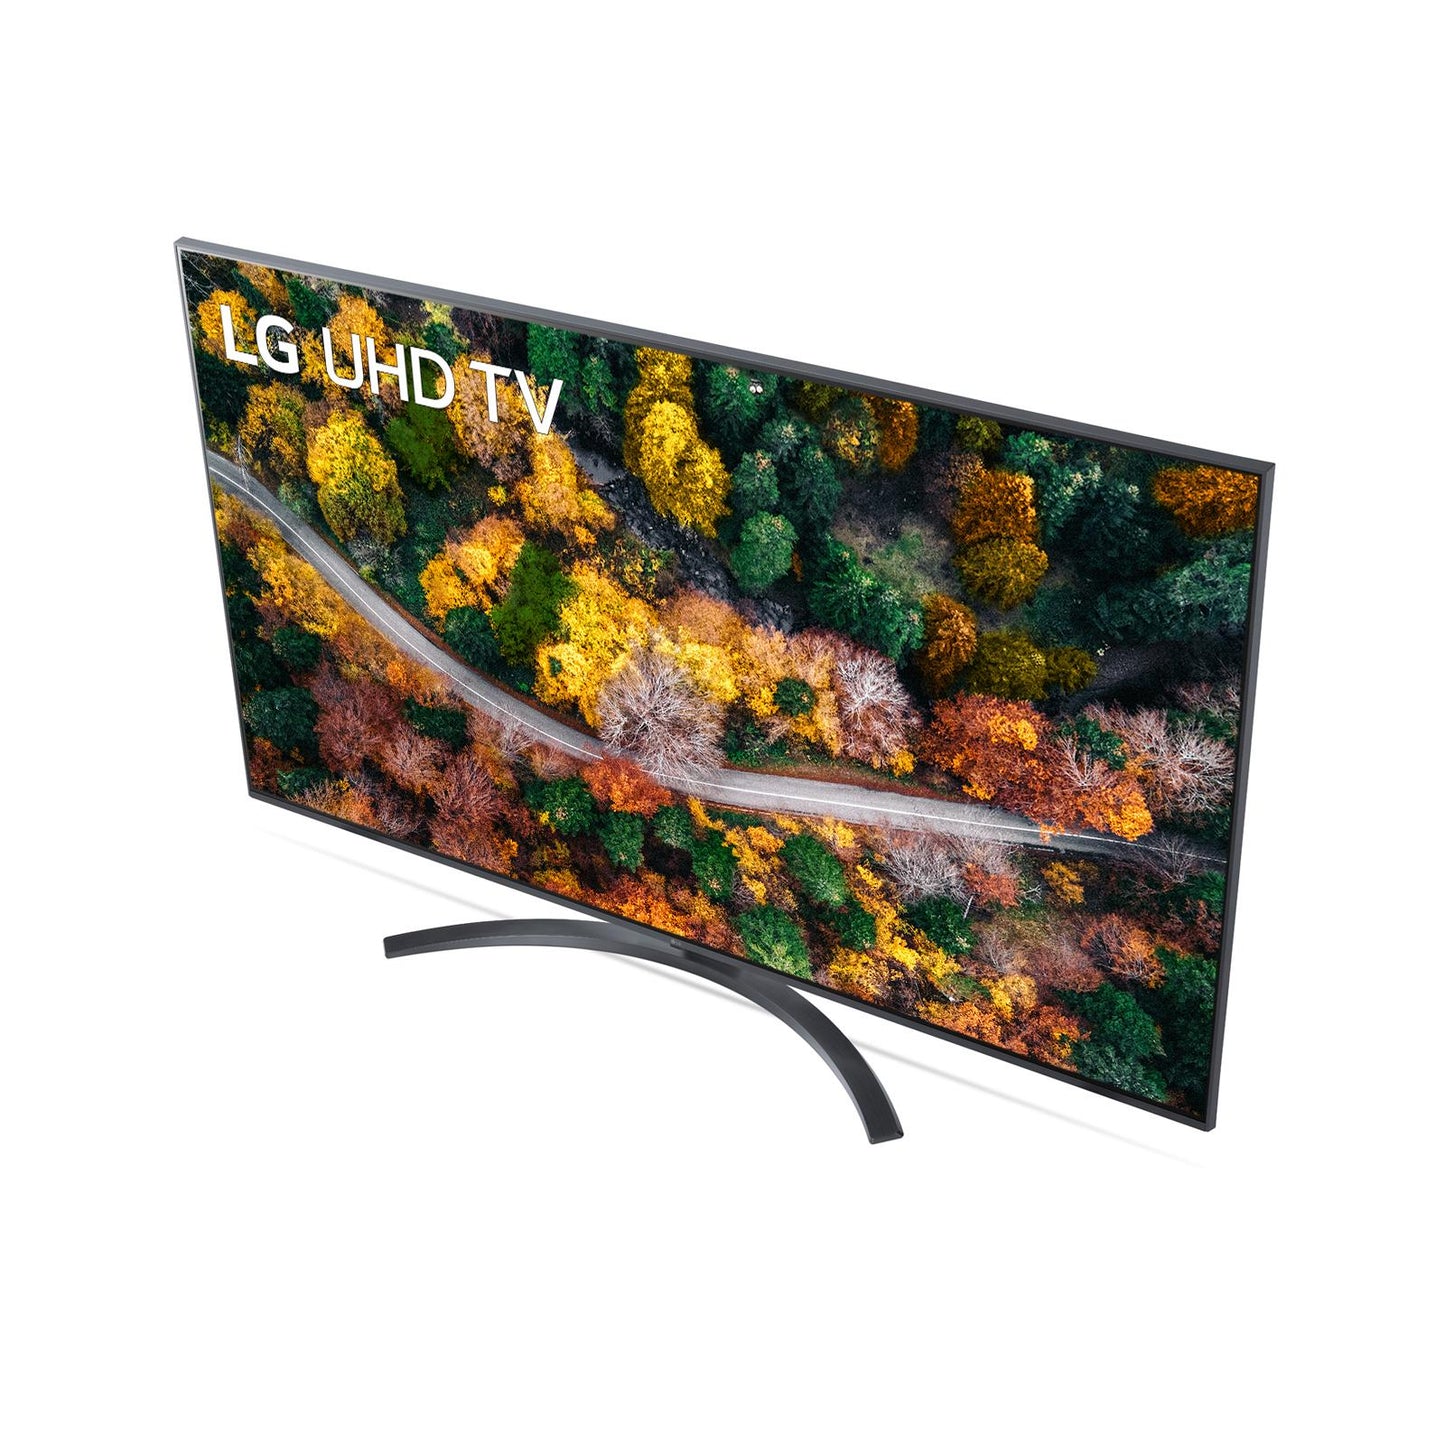 TV LG 55",55UP78003LB,LED UltraHD,Smart TV,WiFi,HDR,DVB-S2